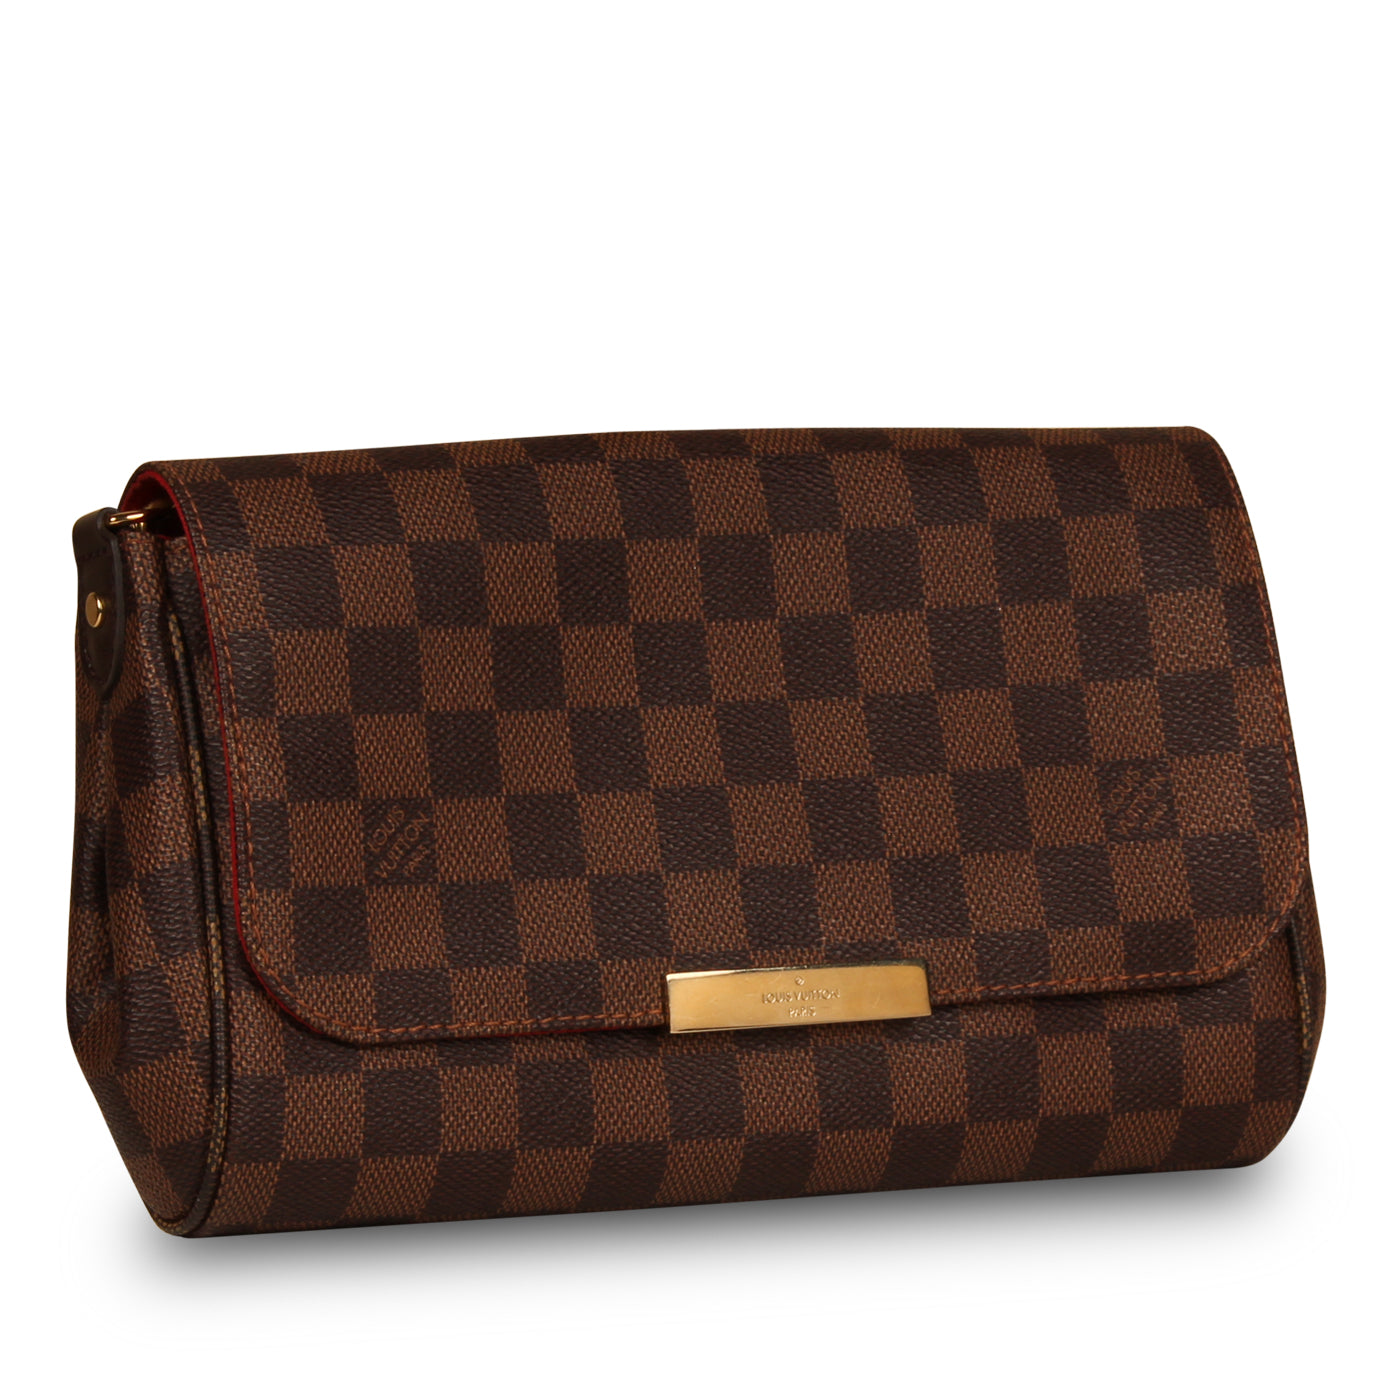 Authentic Louis Vuitton Damier Ebene Favorite PM Crossbody Shoulder Bag